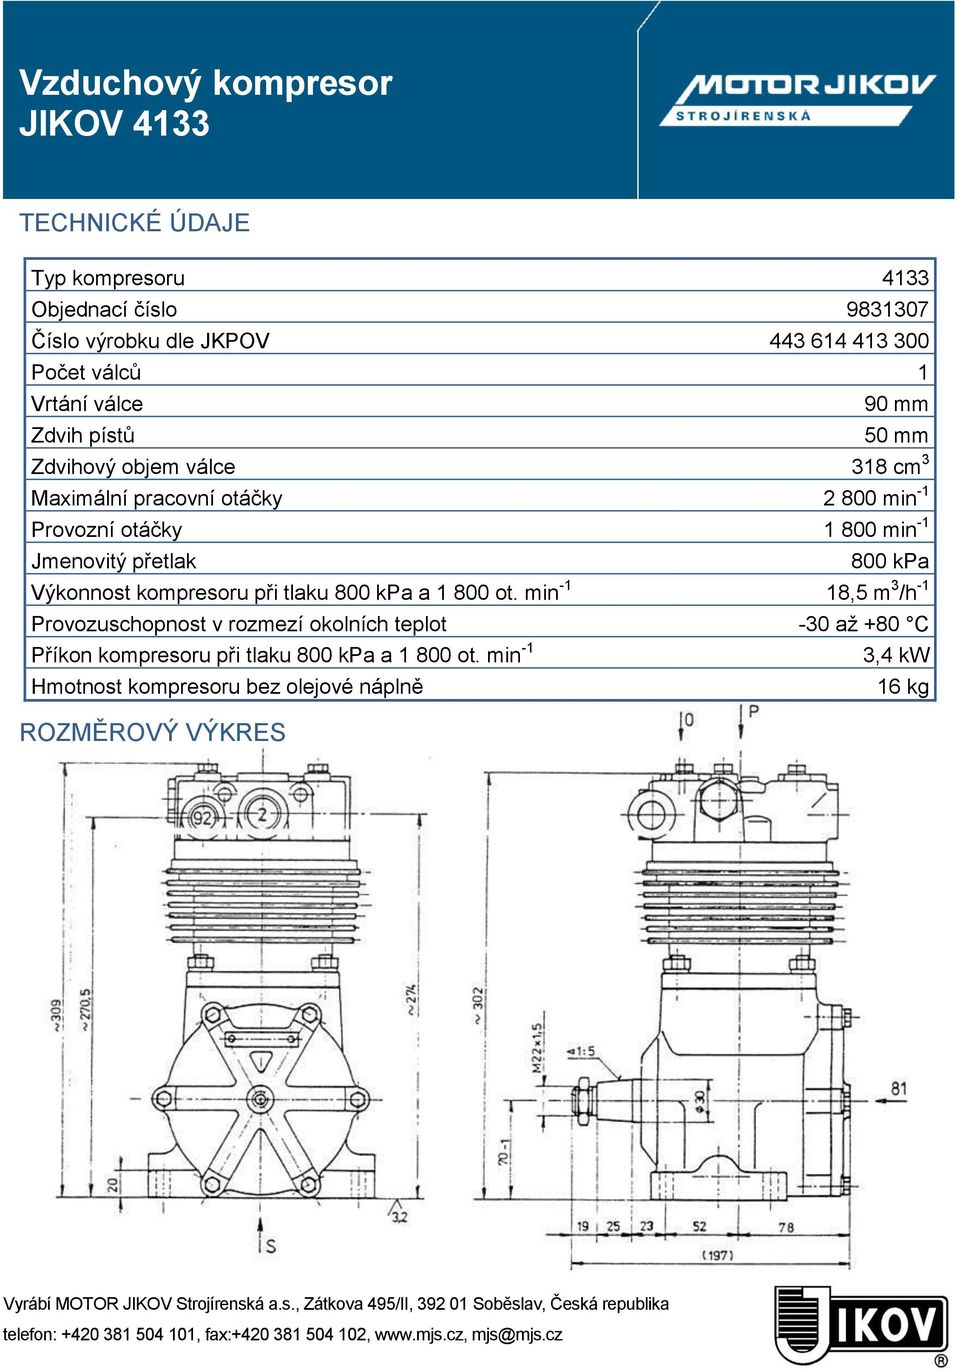 -1 Jmenovitý přetlak 800 kpa Výkonnost kompresoru při tlaku 800 kpa a 1 800 ot.